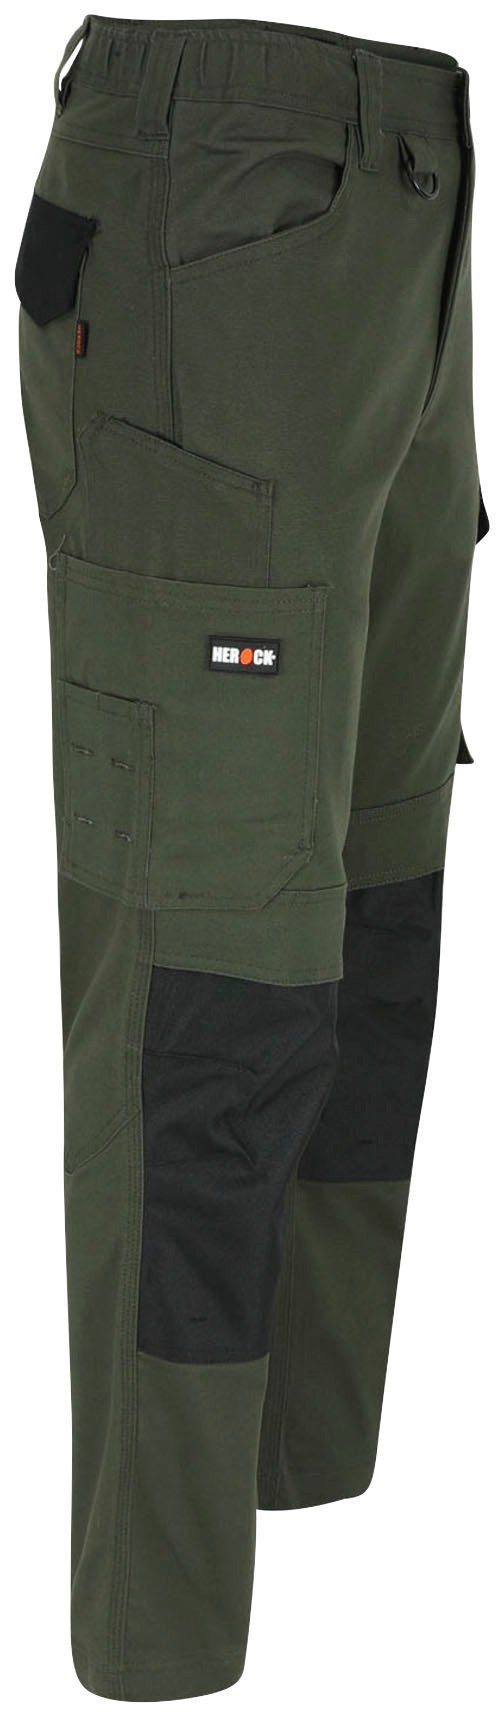 Arbeitshose wasserabweisend DERO khaki Herock Fit Passform, Slim Multi-Pocket, 2-Wege-Stretch,